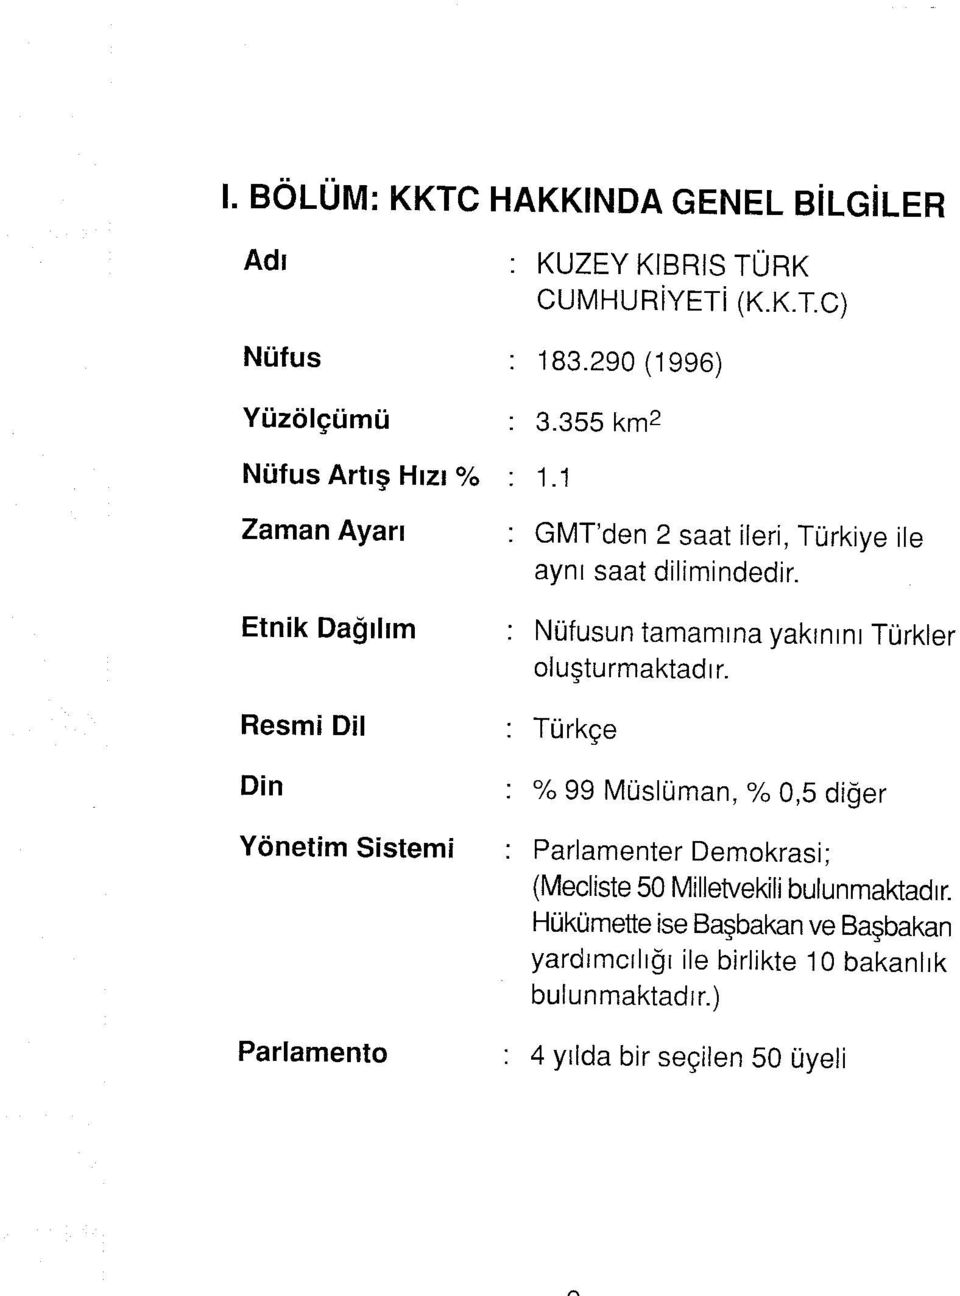 1 GMT'den 2 saat ileri, Türkiye ile aynı saat dilimindedir. Nüfusun tamamına yakınını Türkler oluşturmaktadır.